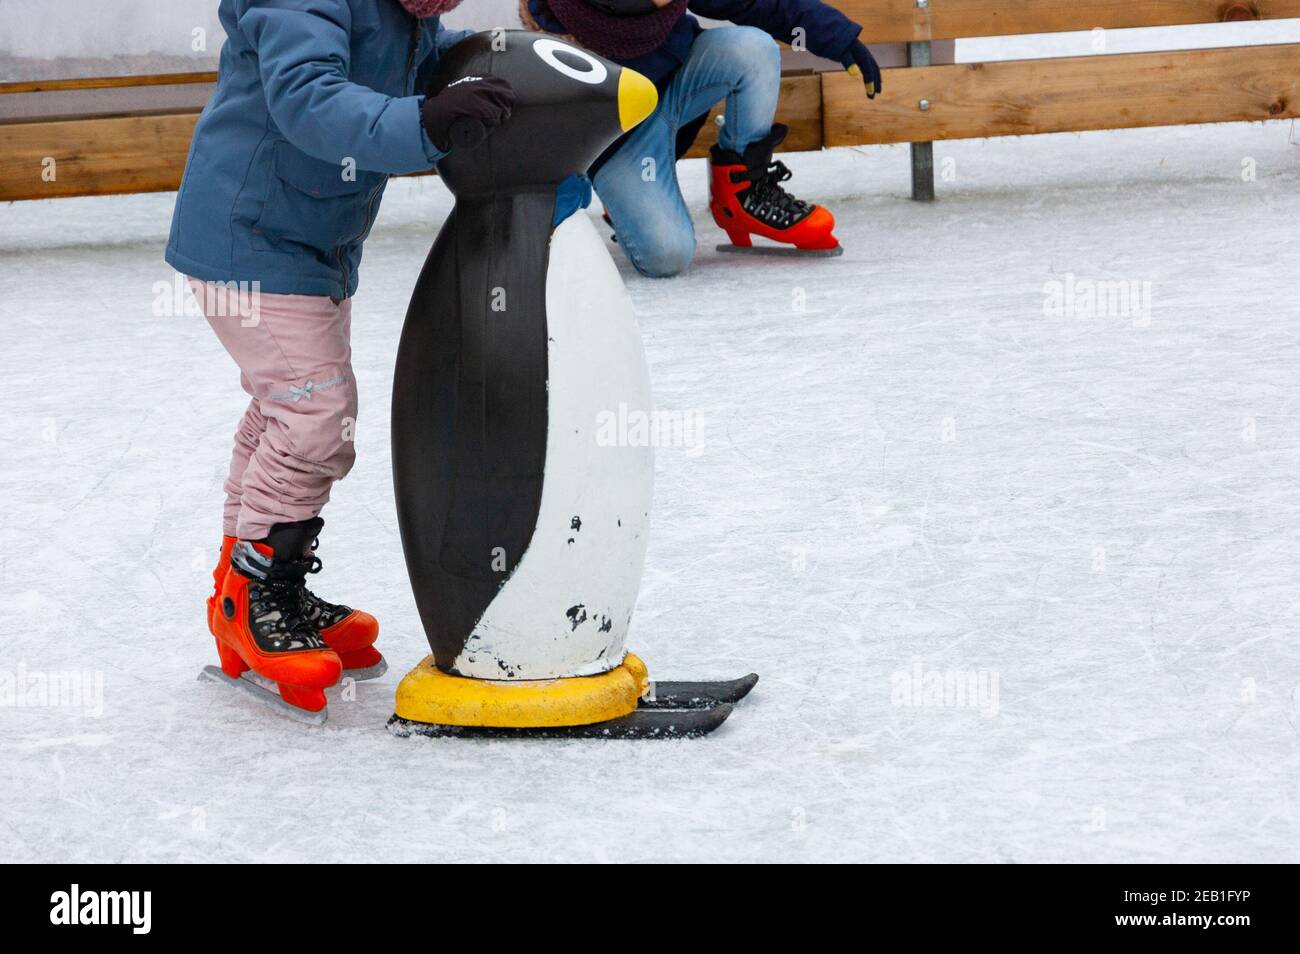 Kinder Schlittschuh mit Pinguin Skating Hilfe auf Eisbahn betrieben für  Kinder Erholung während der Winterferien. Beine in orange Schlittschuhe.  Weihnachtsurlaub Spaß Stockfotografie - Alamy